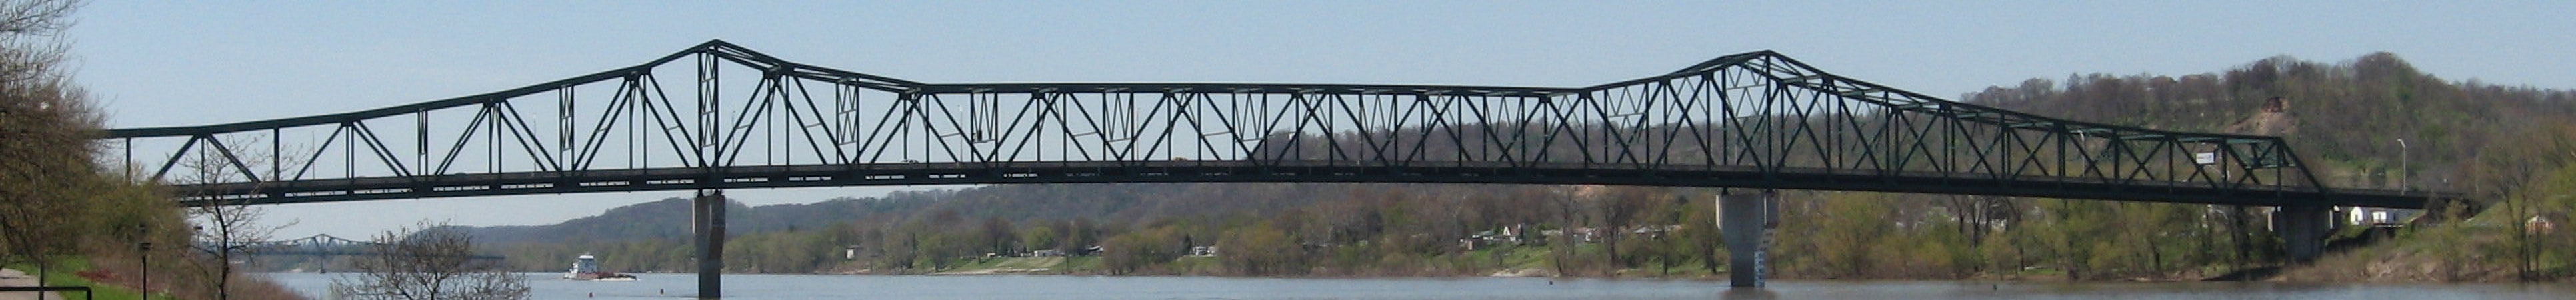 Continuous truss bridge in Huntington, West Virginia